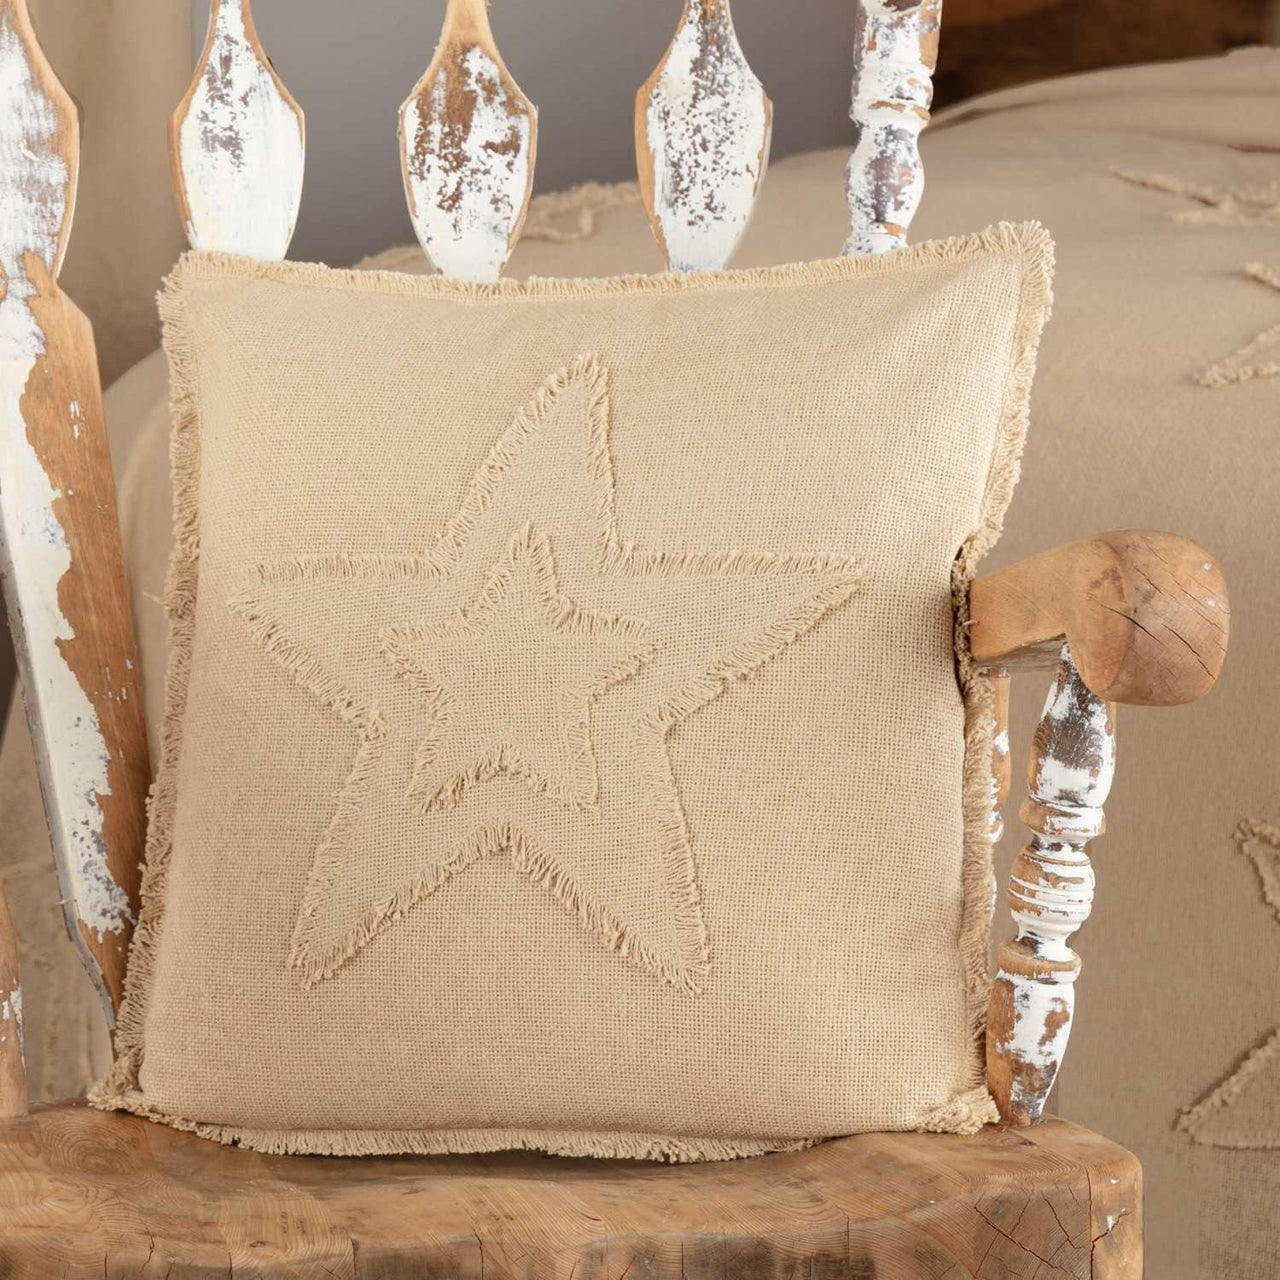 Burlap Vintage Star Pillow 18x18